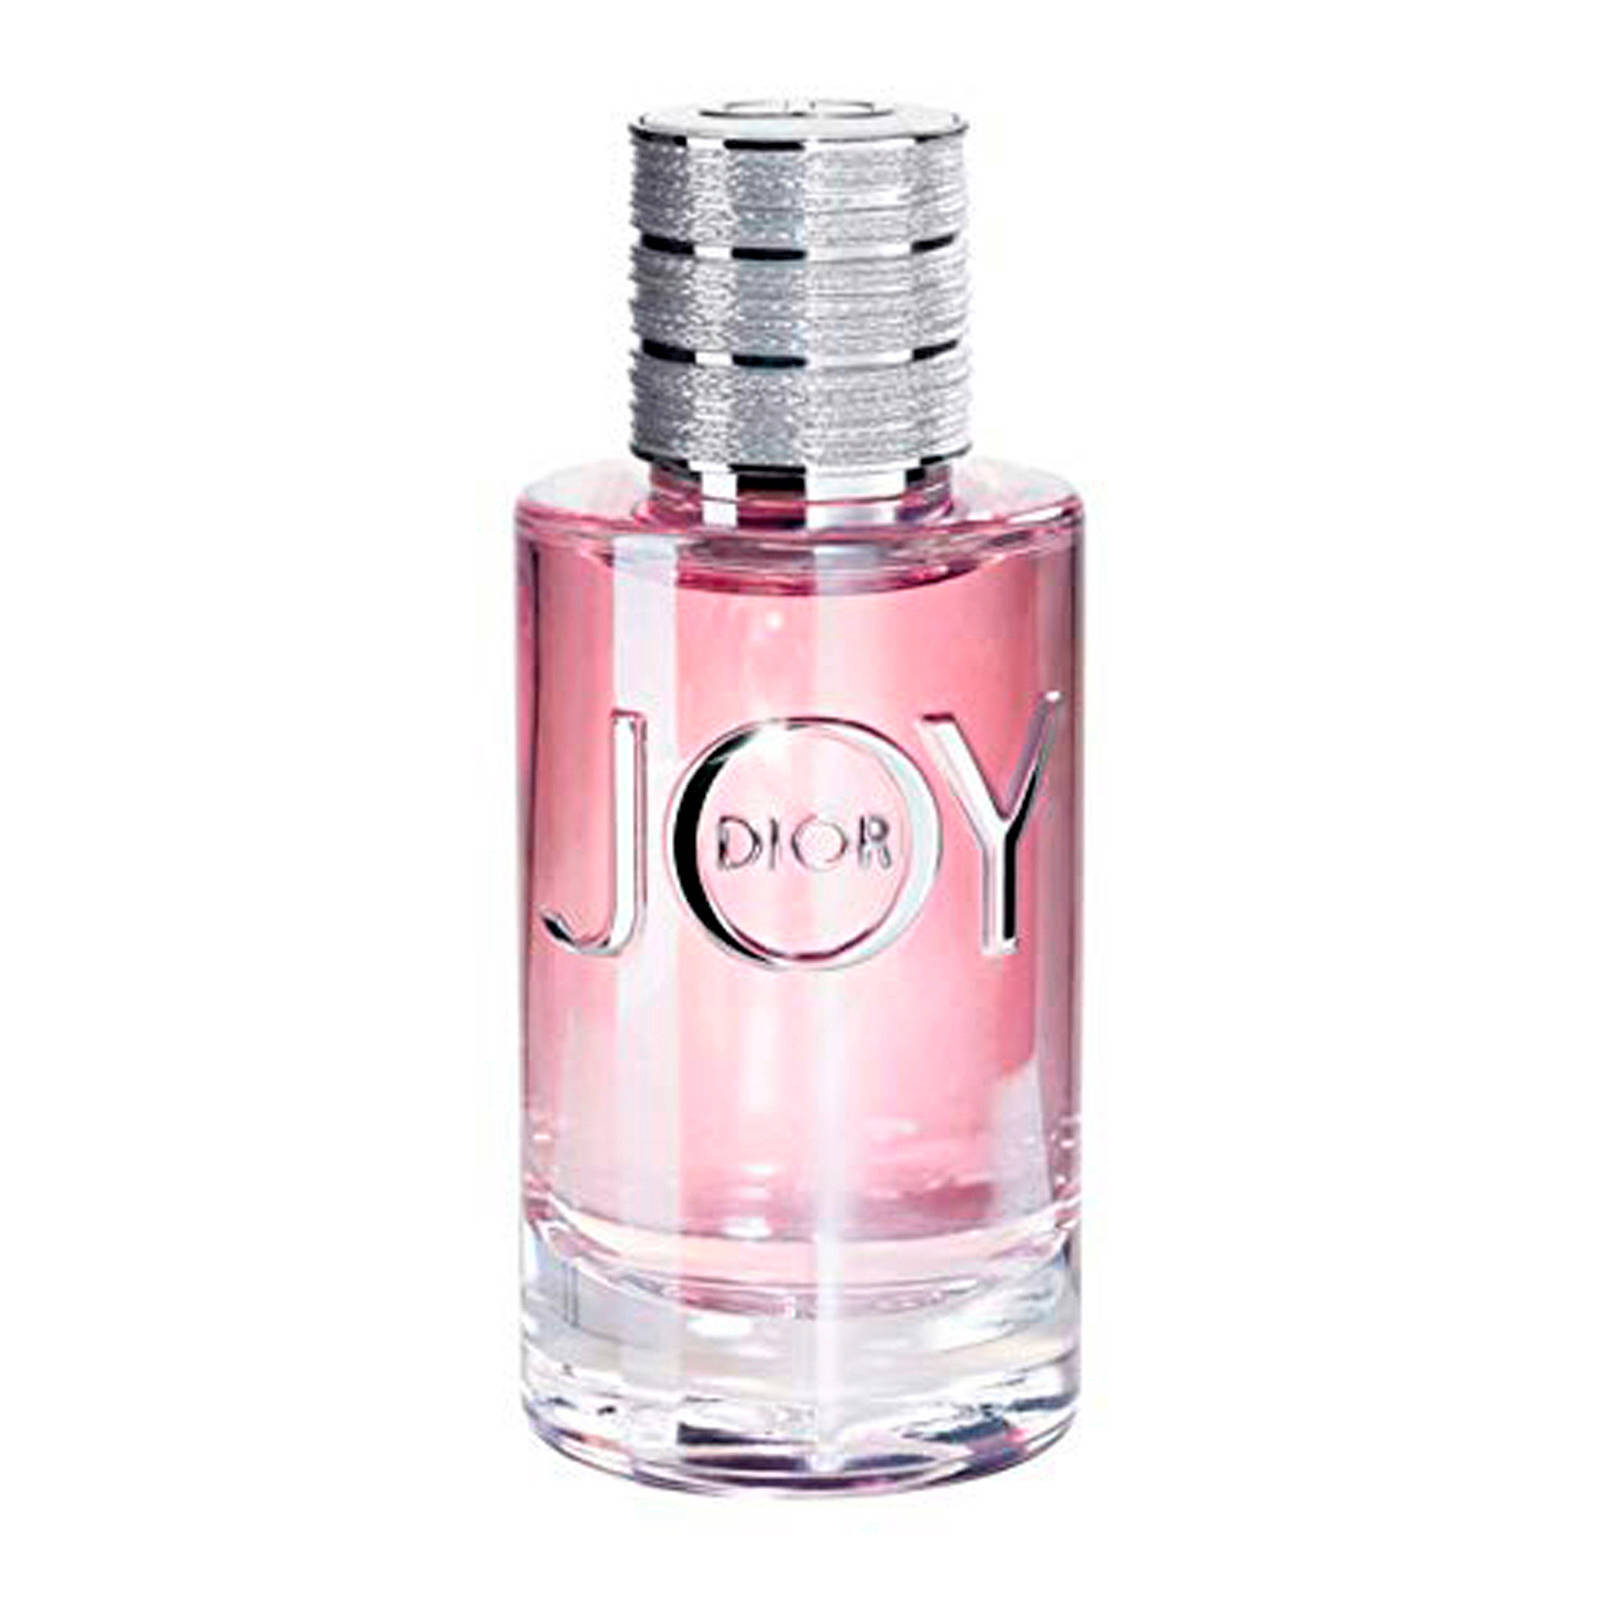 Dior Joy eau de parfum - 30 ml | wehkamp